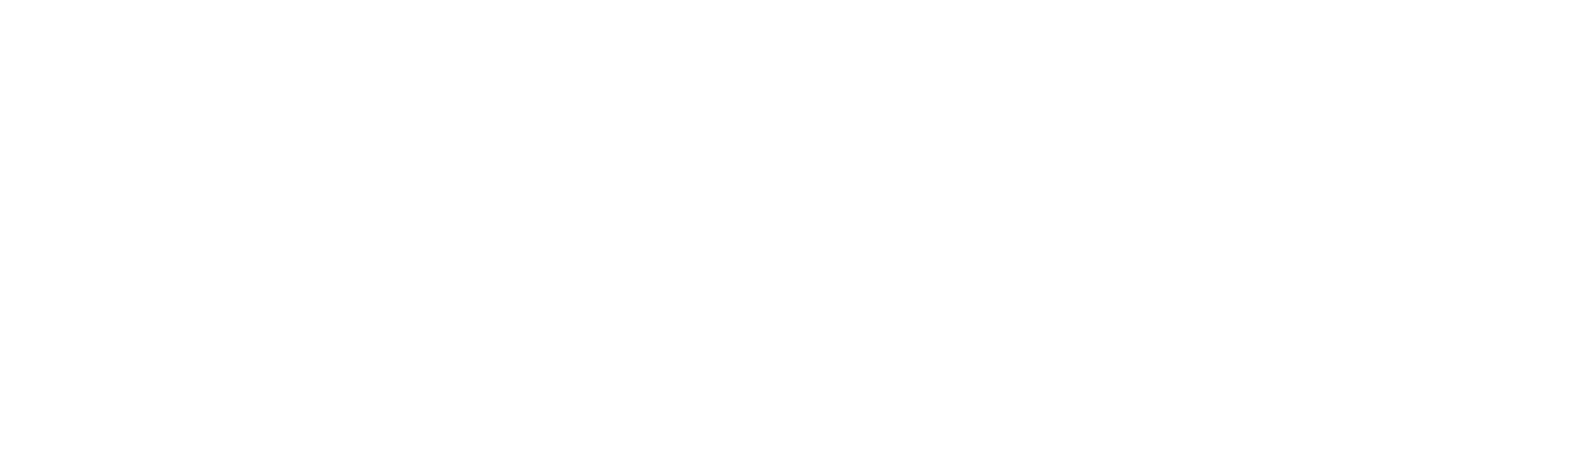 HELLENiQ ENERGY logo grand pour les fonds sombres (PNG transparent)